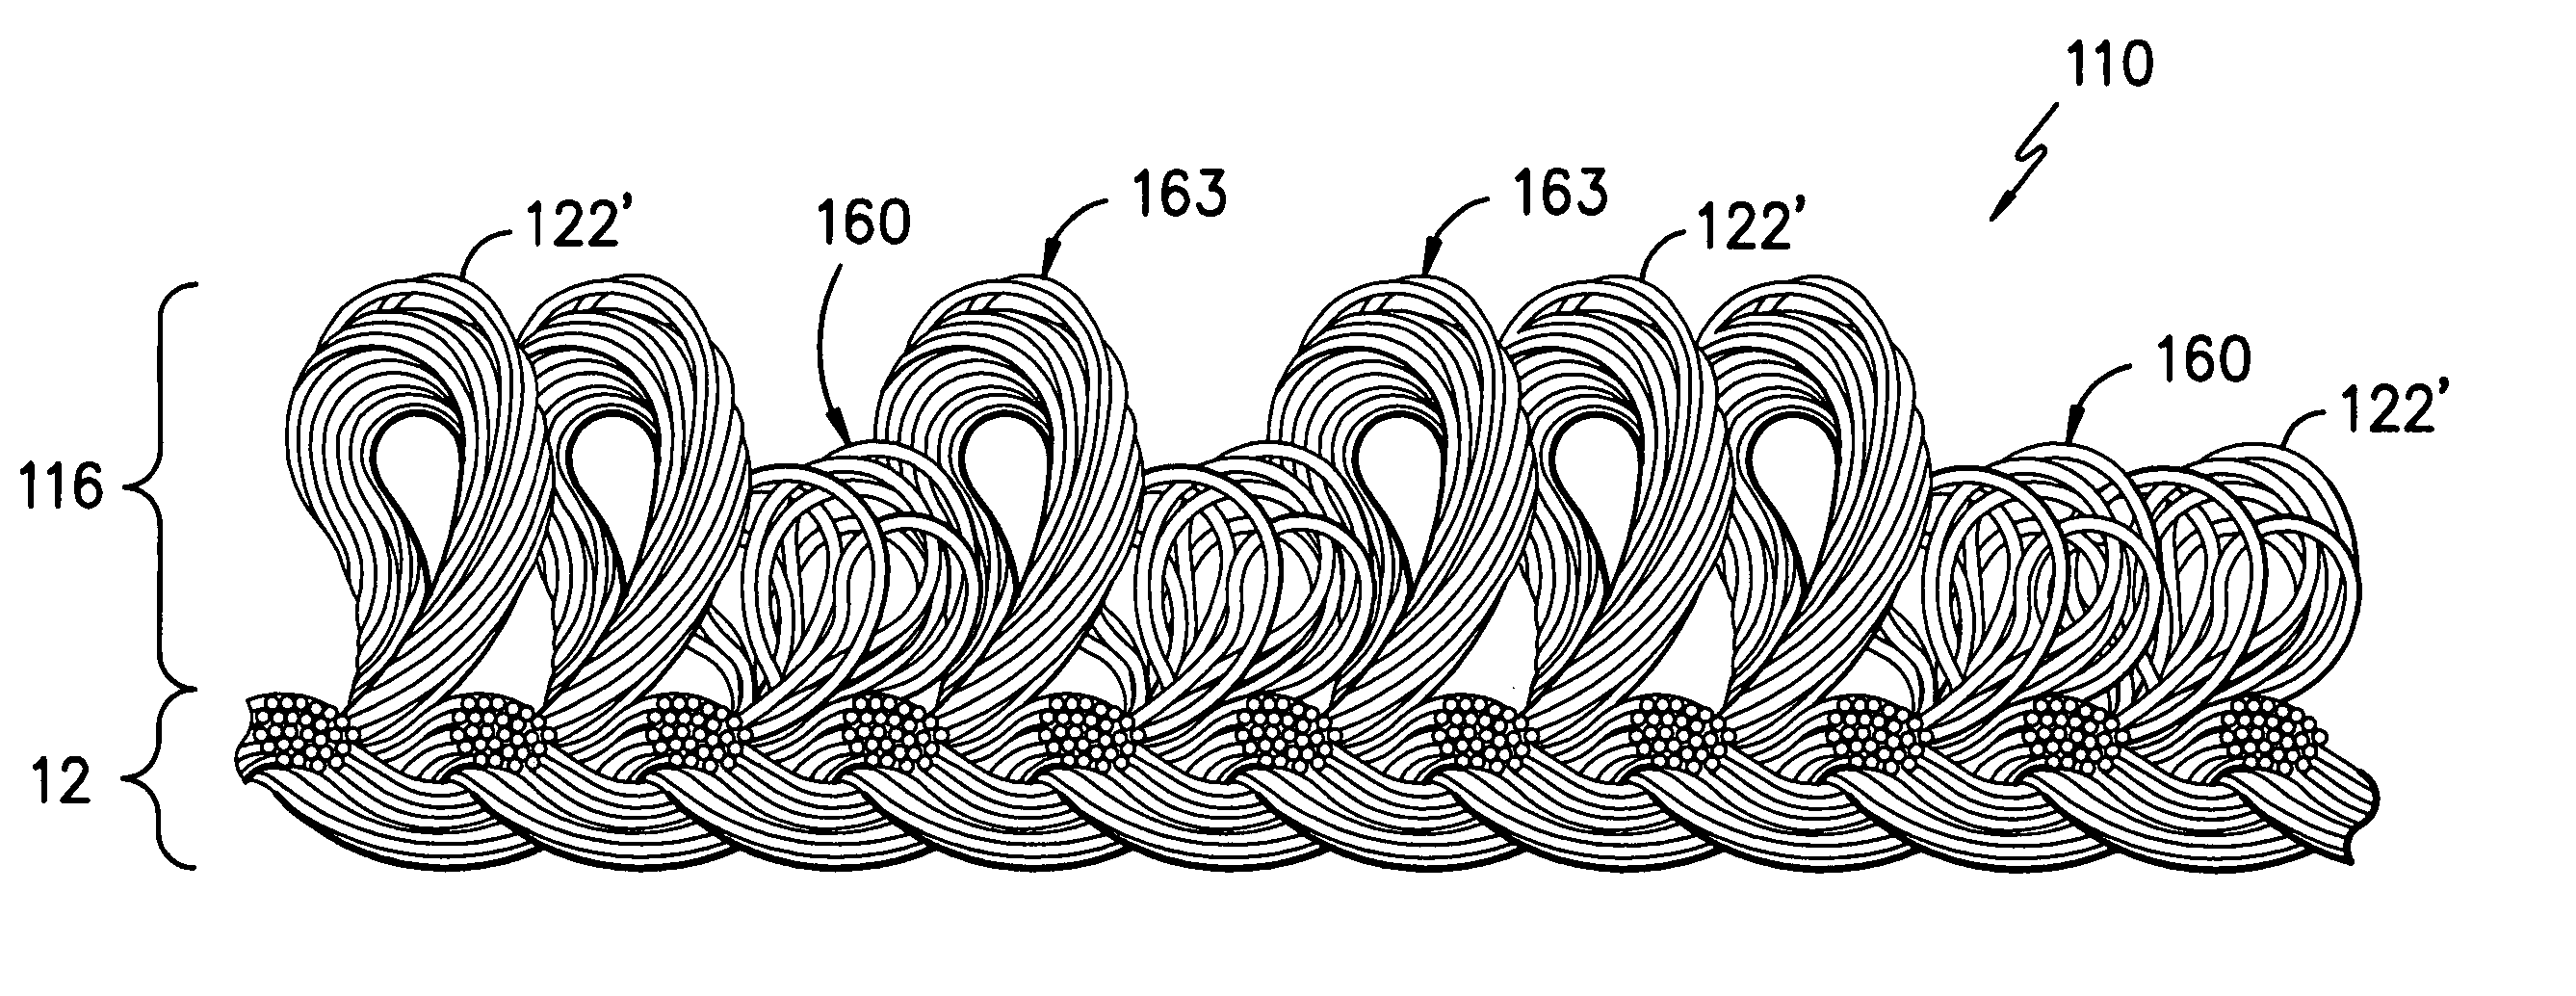 Loop pile fabric having randomly arranged loops of variable height